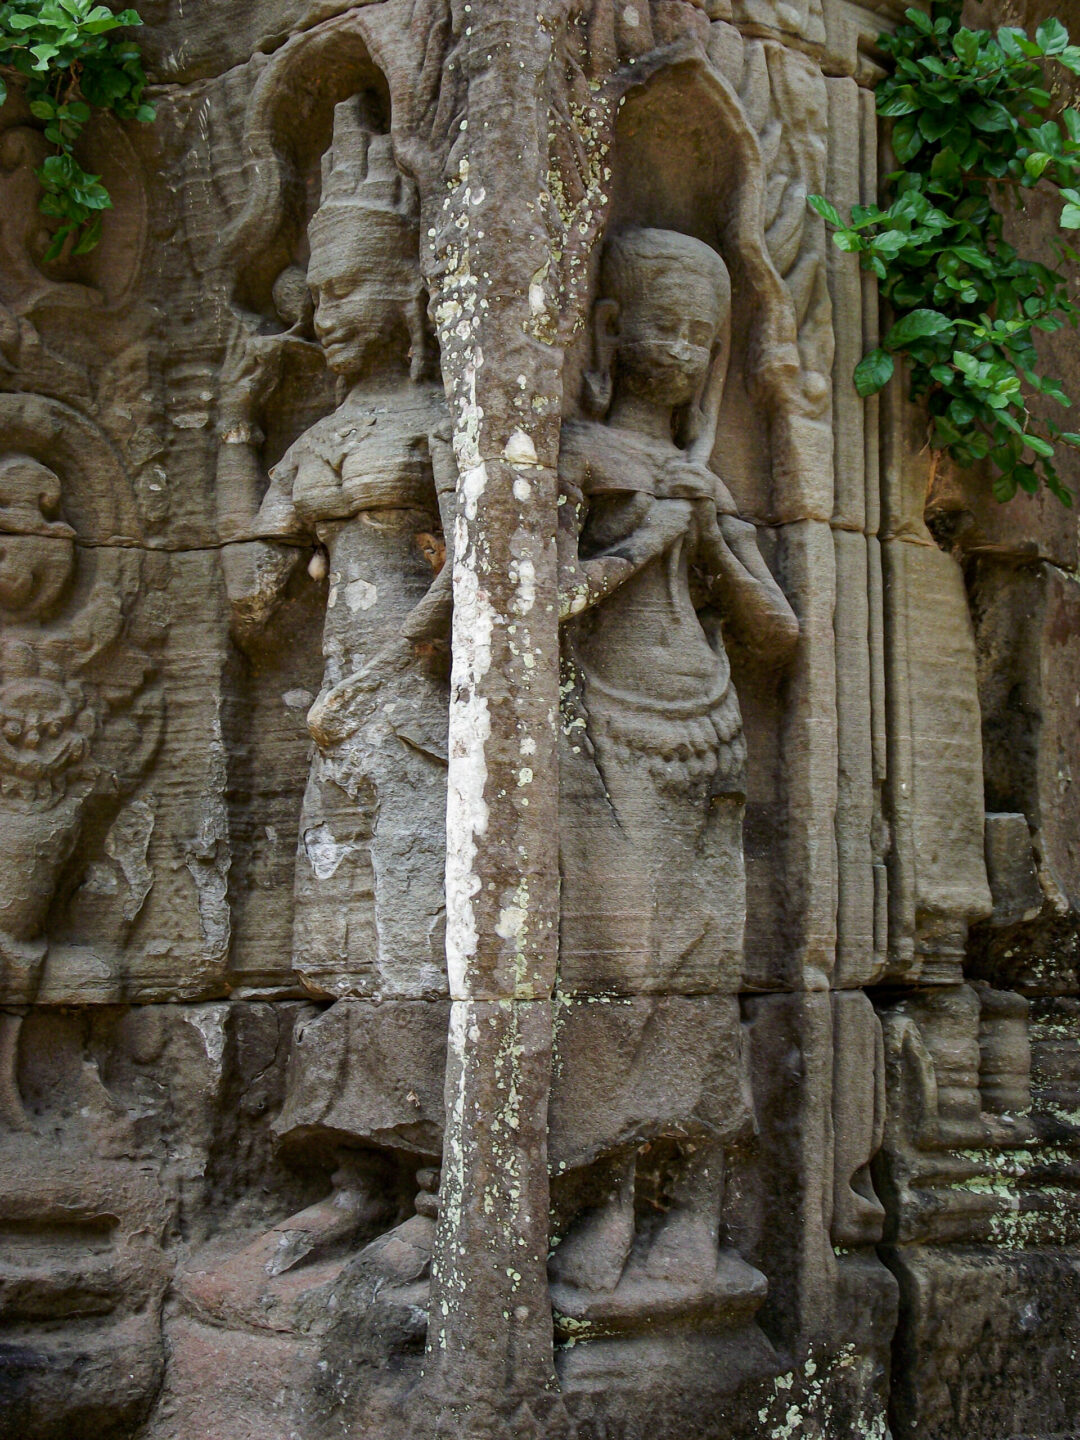 Prei Temple Angkor